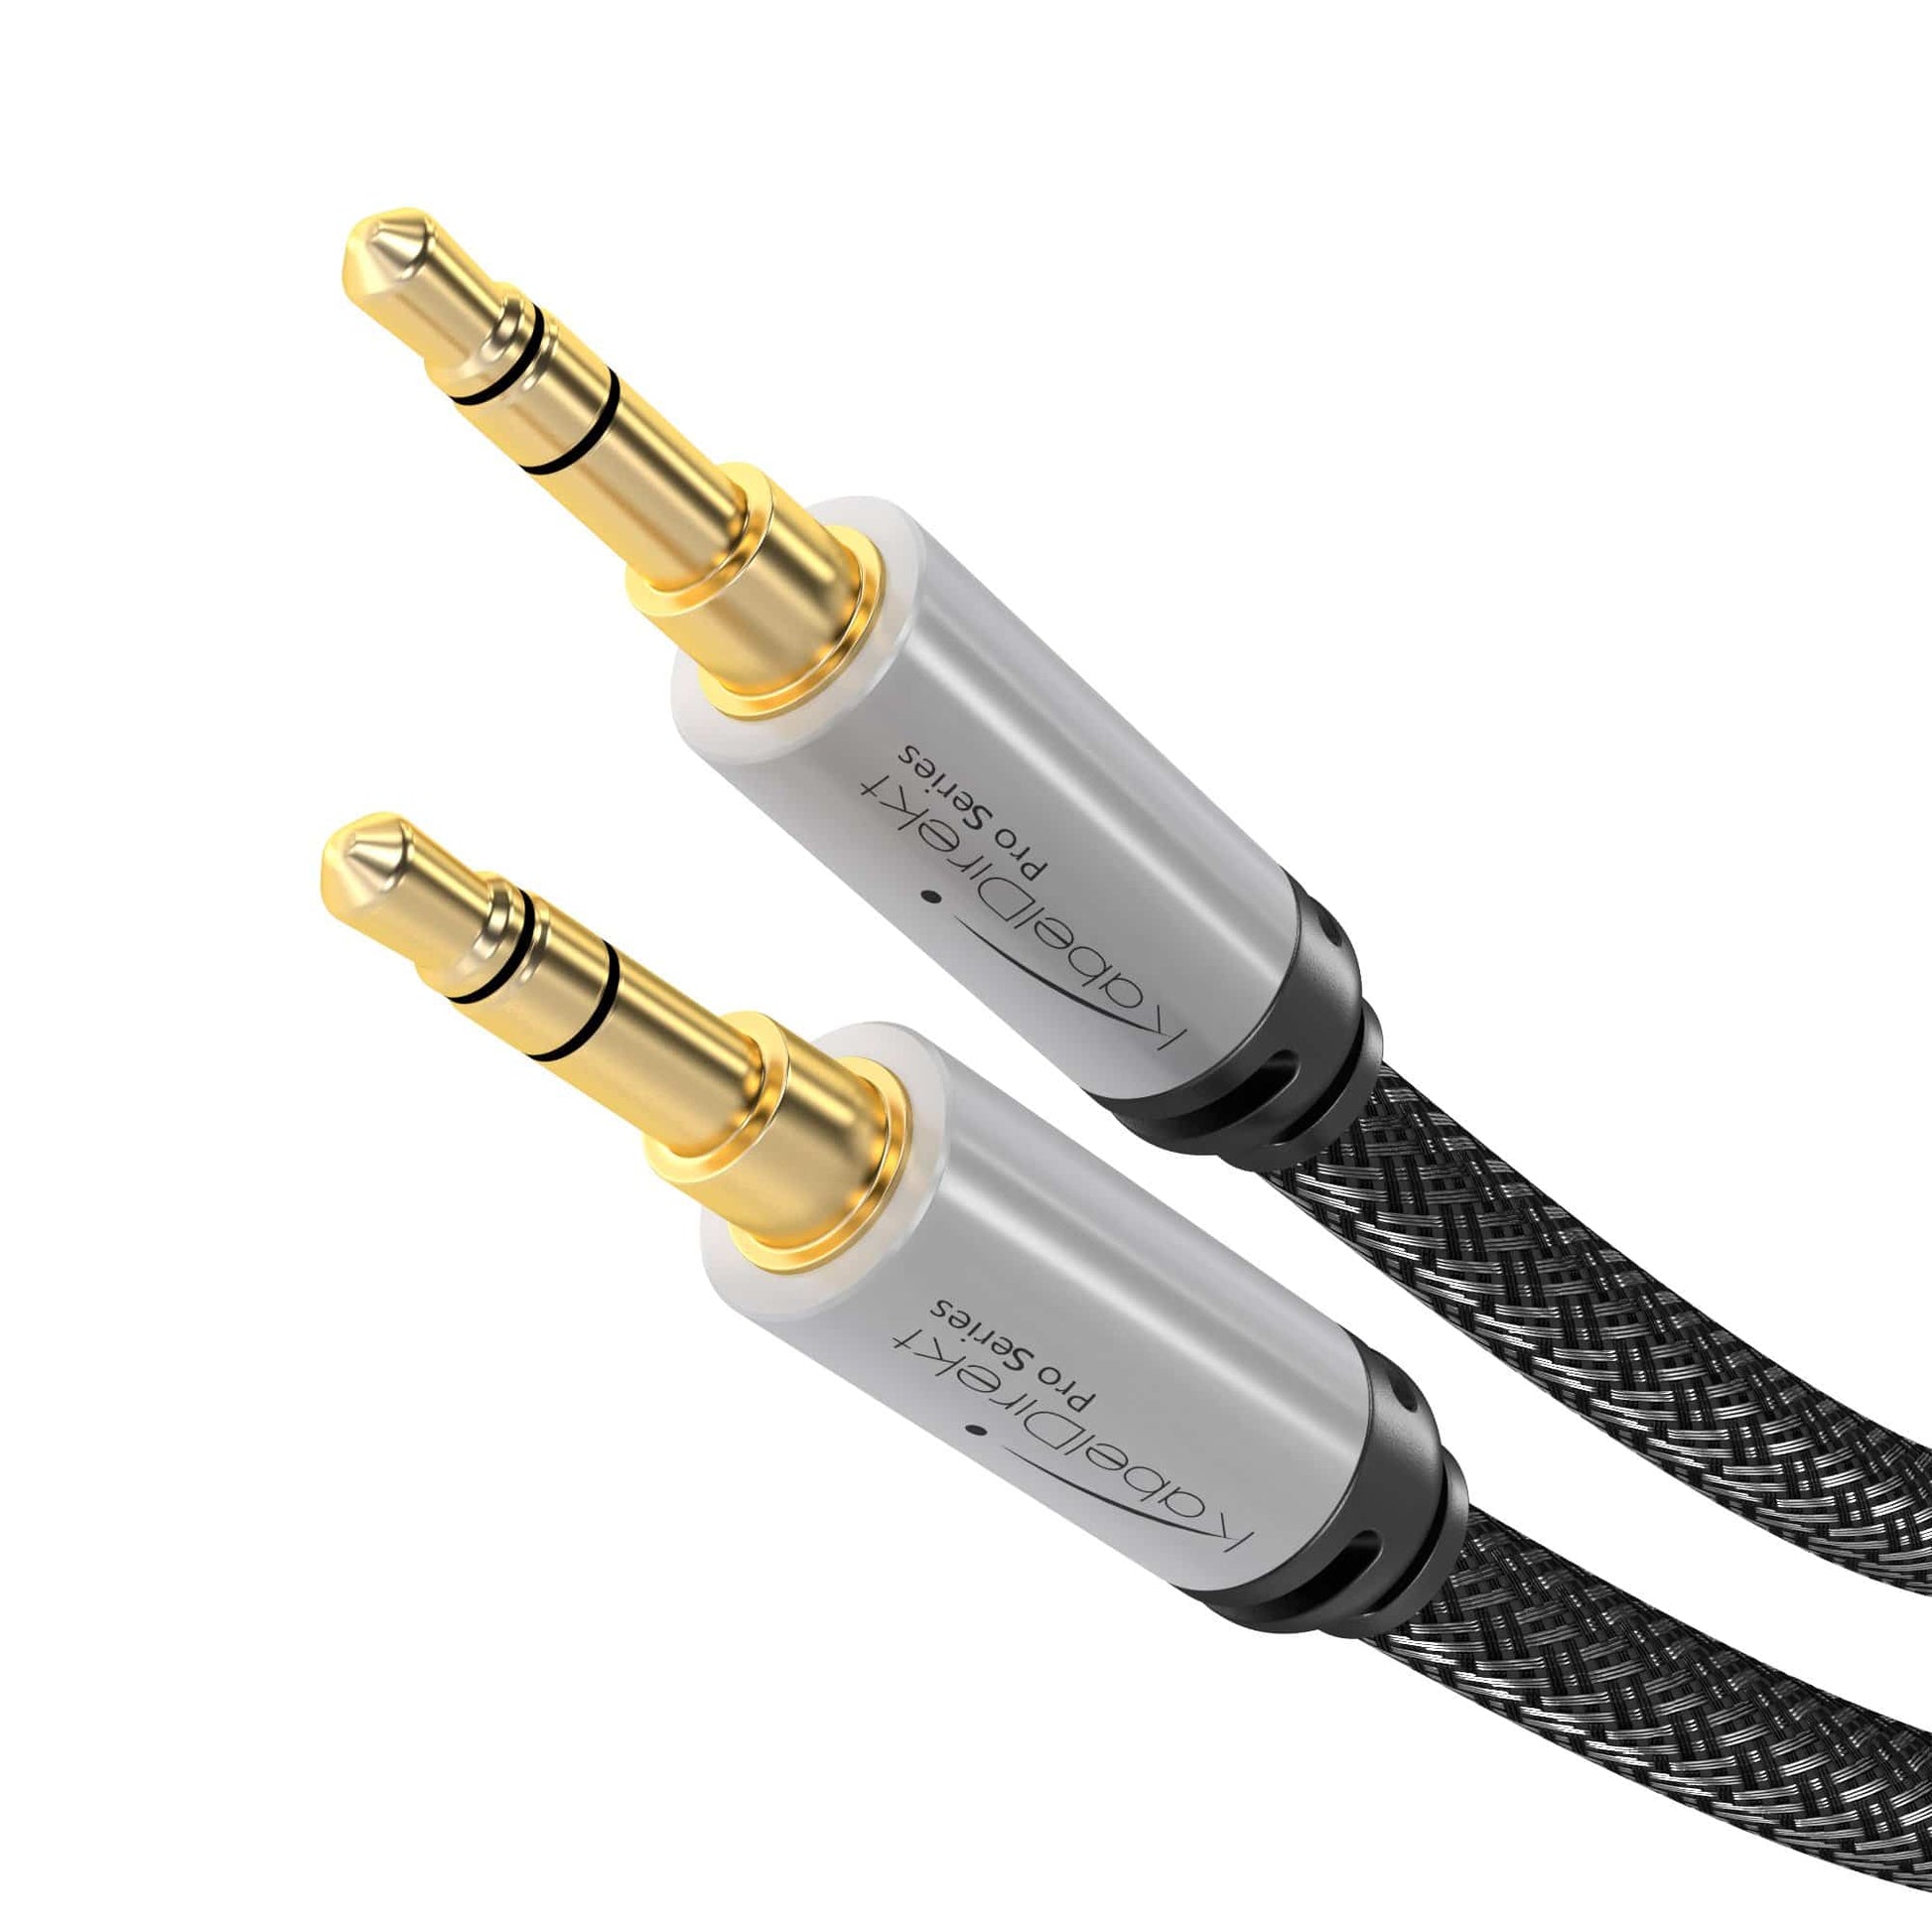 KabelDirekt – 1,5m Câble Cinch/RCA (1 x fiche RCA mâle vers 1 x